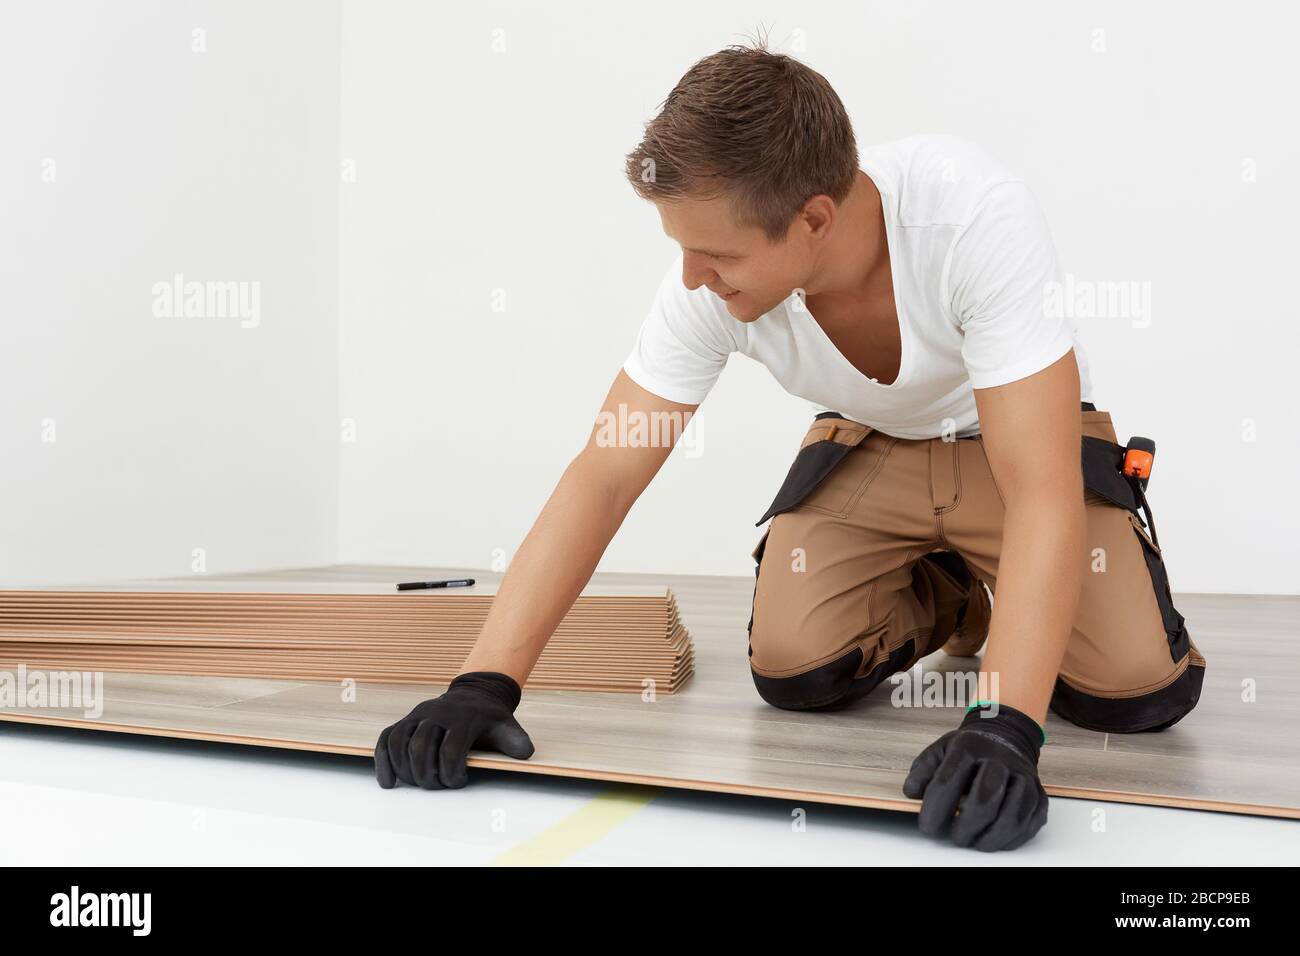 Tischlerarbeiter installieren Laminatboden im Raum. Bauen Sie einen schwimmenden Boden - Bodenbelag - Lagenlaminat Stockfoto